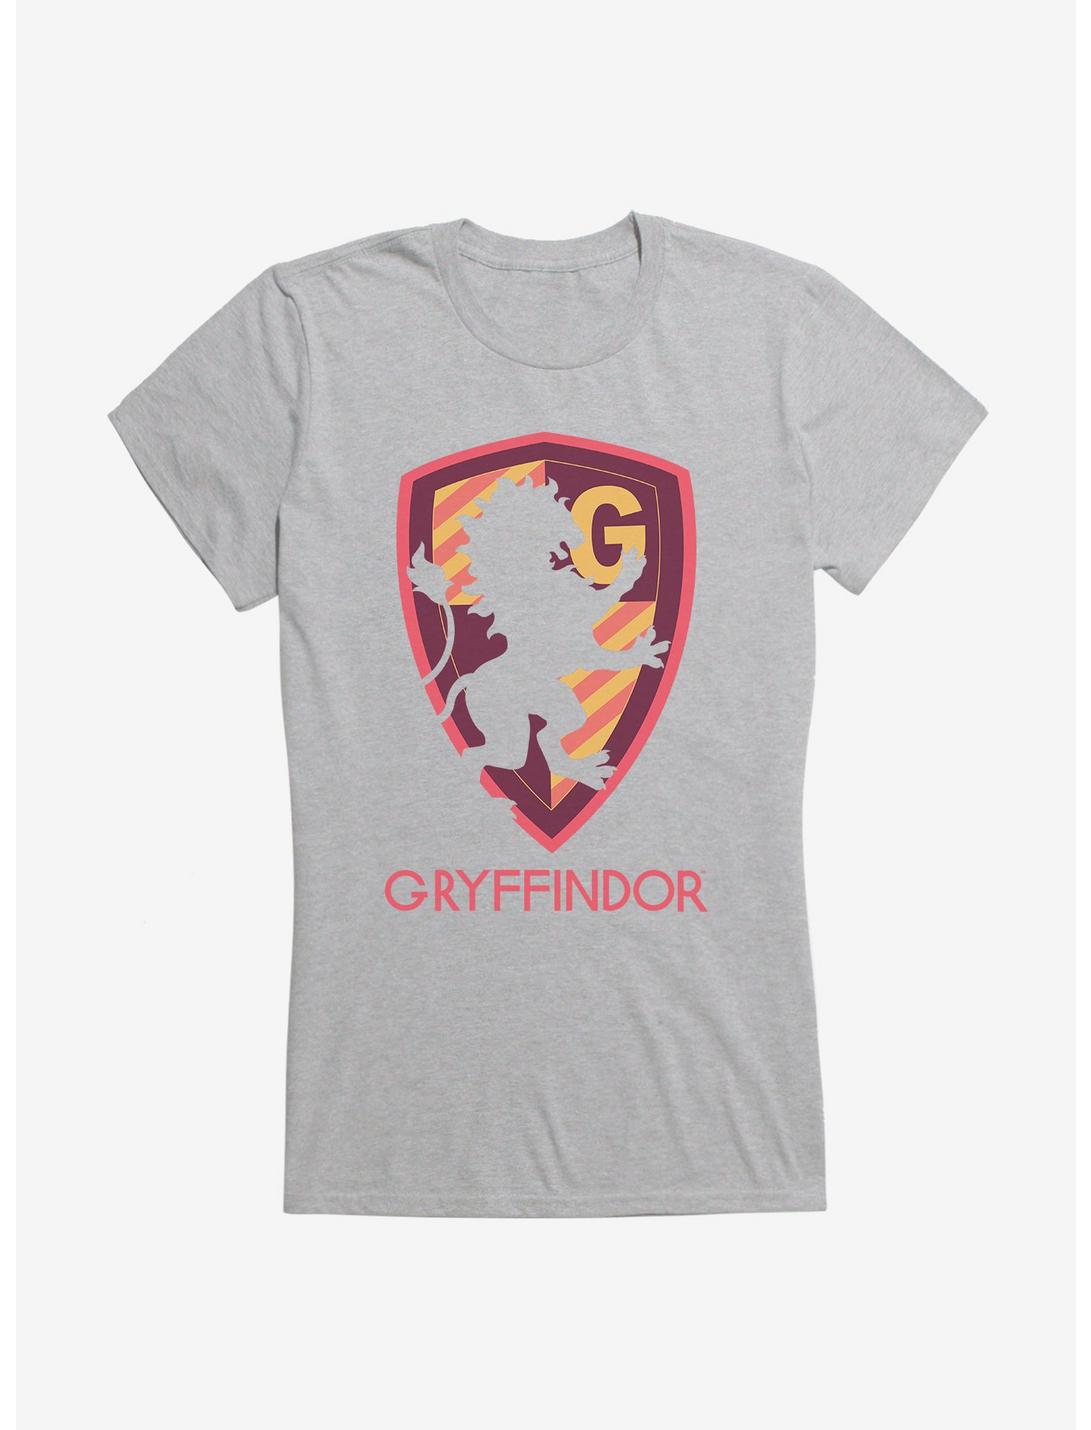 Harry Potter Gryffindor Shield Girls T-Shirt, , hi-res